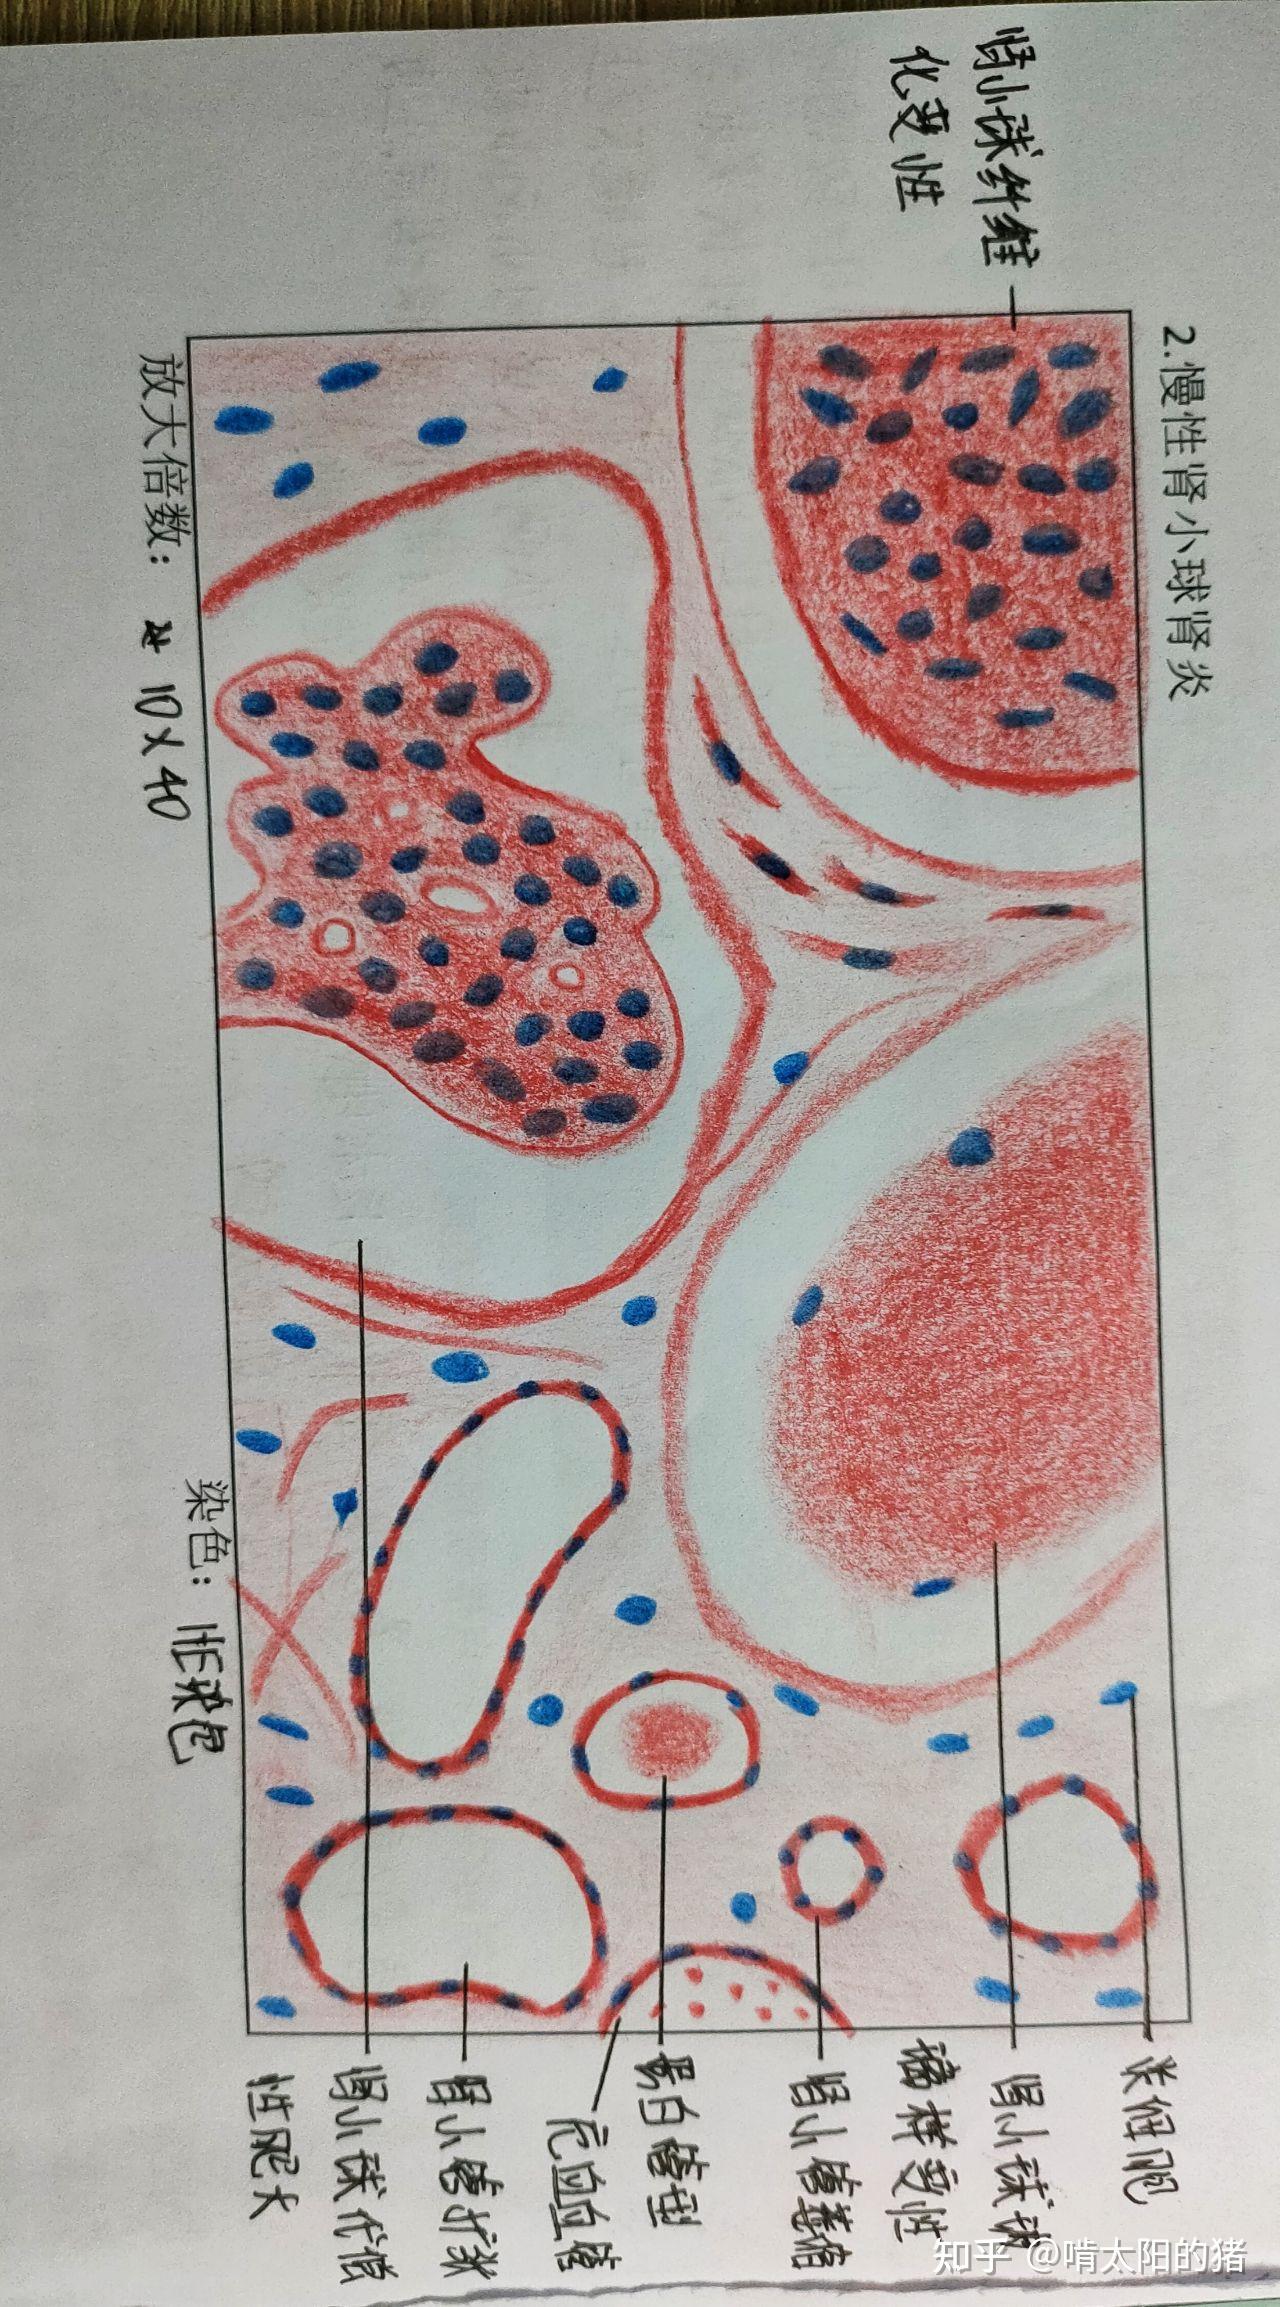 肝细胞坏死手绘图图片